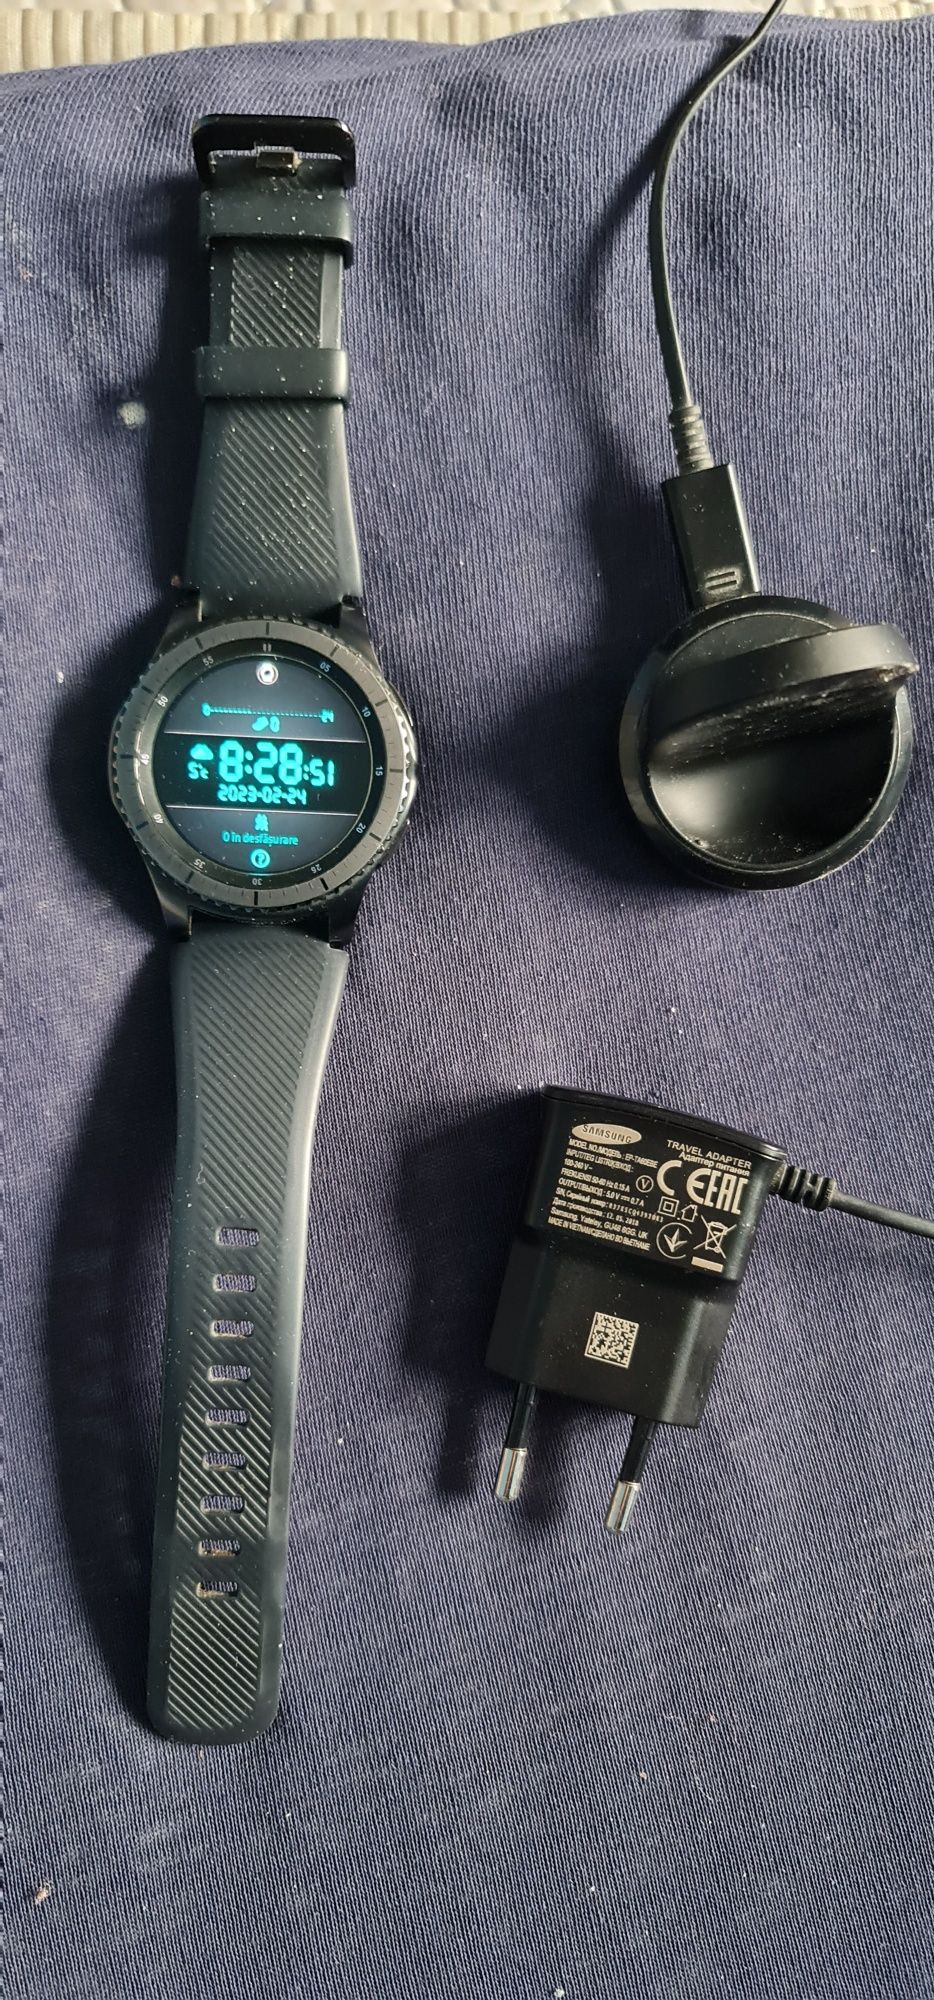 Ceas Smartwatch Samsung Gear S3, Frontier, bratara activa silicon ip68